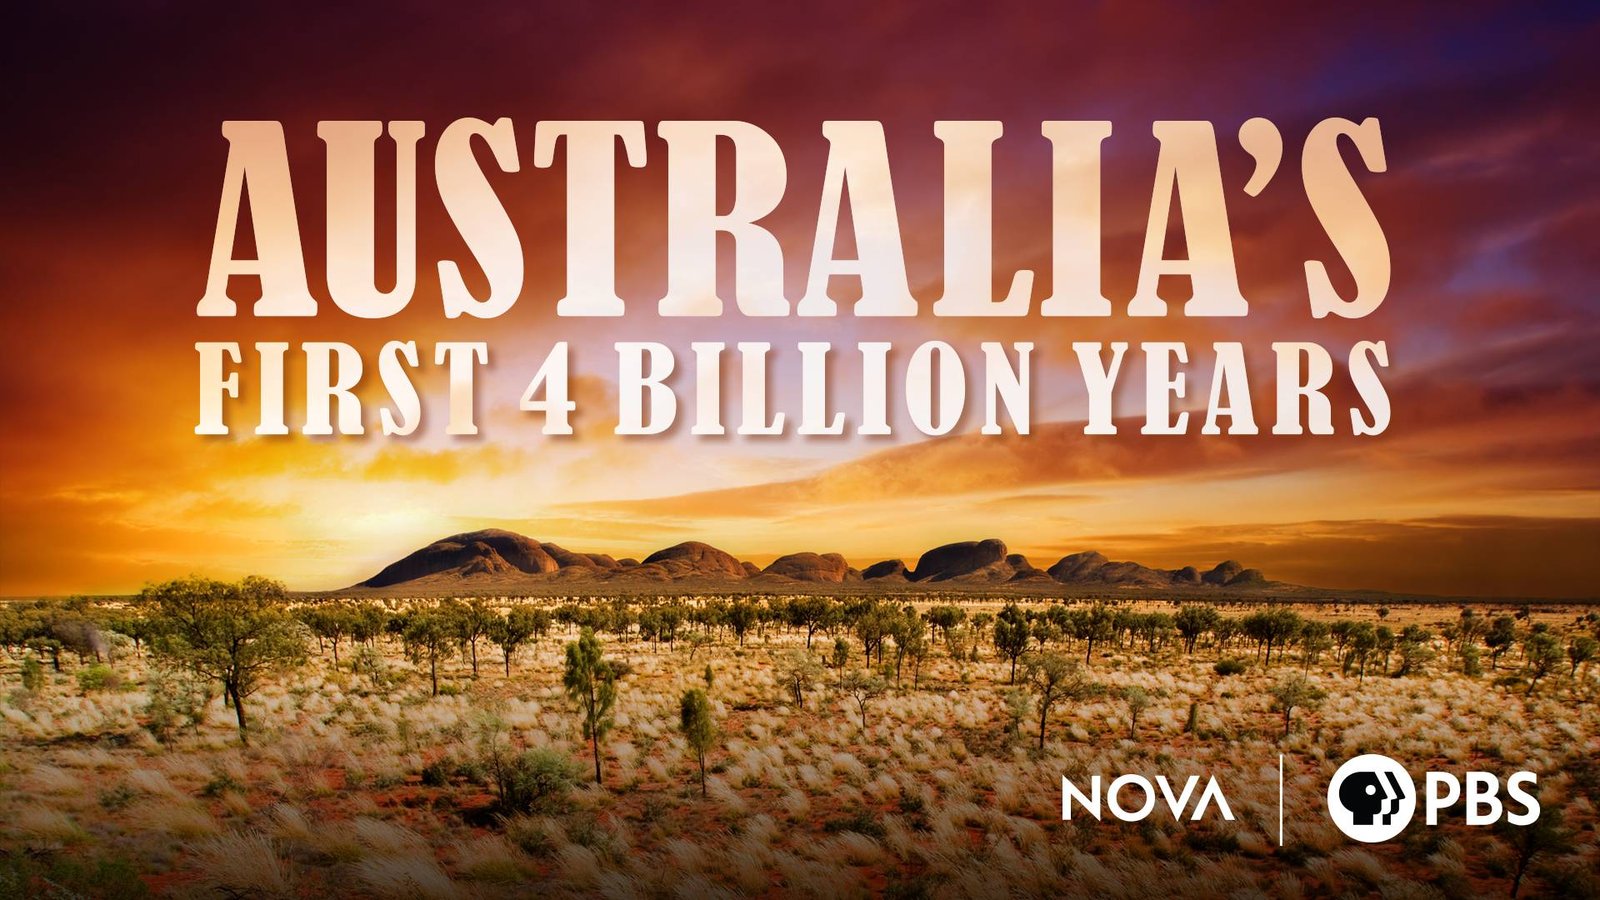 NOVA - Australia's First 4 Billion Years